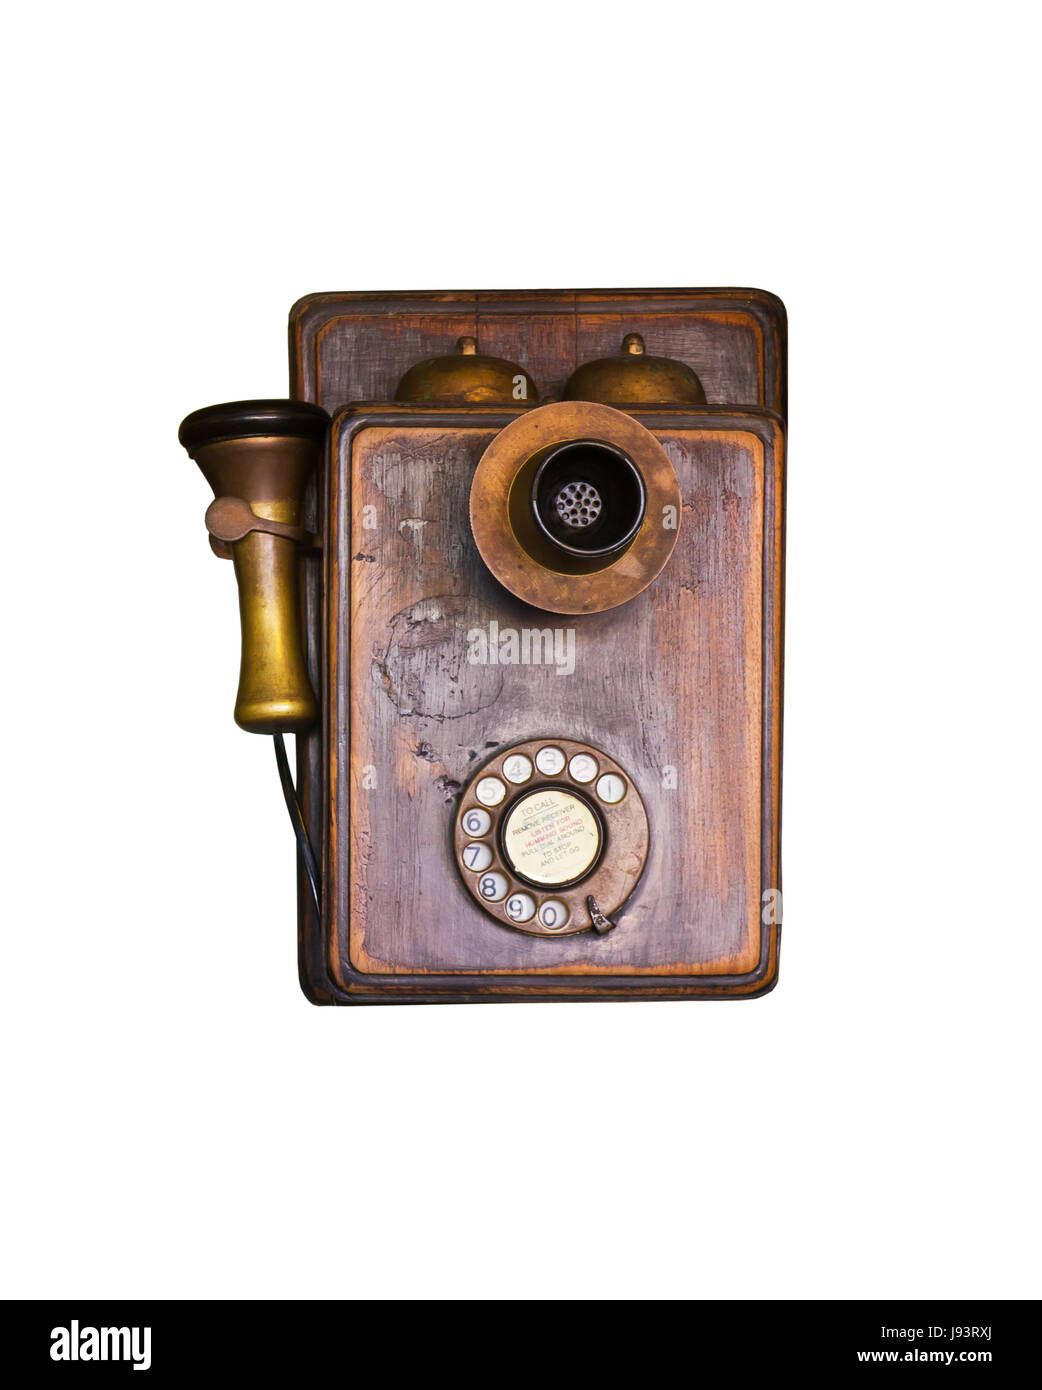 telephone, phone, isolated, antique, vintage, retro, phones, conversation, Stock Photo